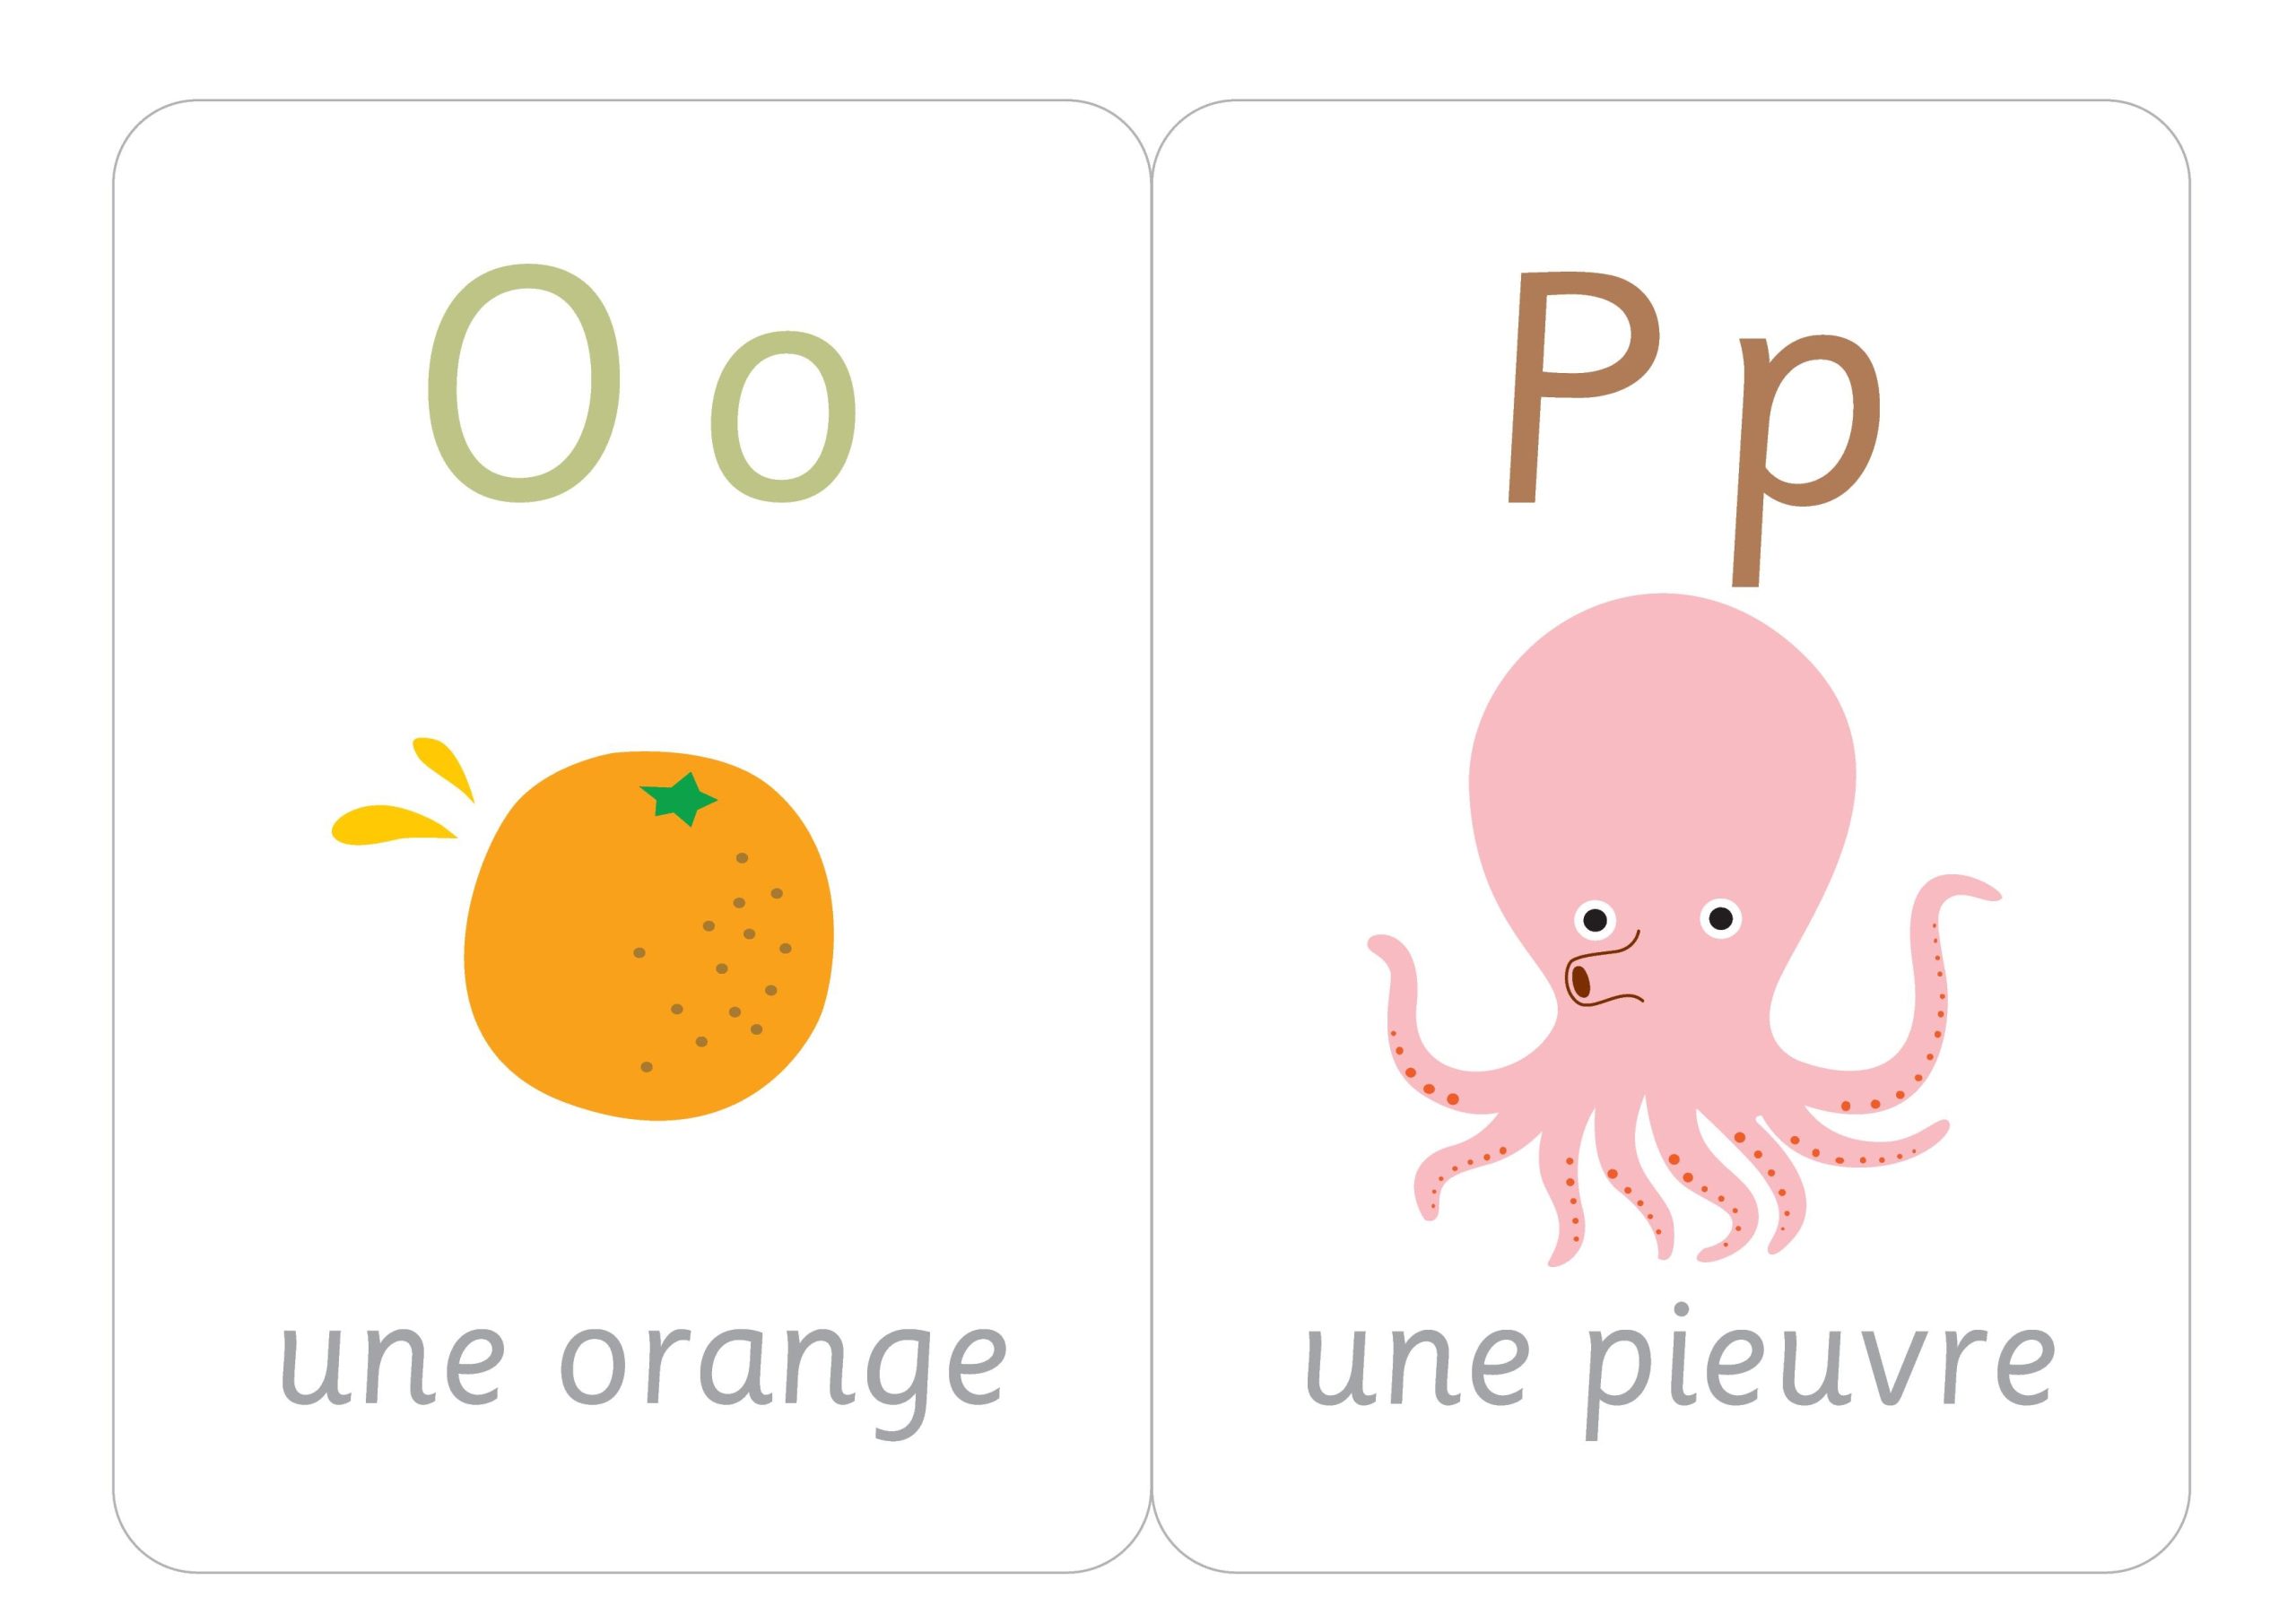 Французский алфавит: скачать качественные изображения